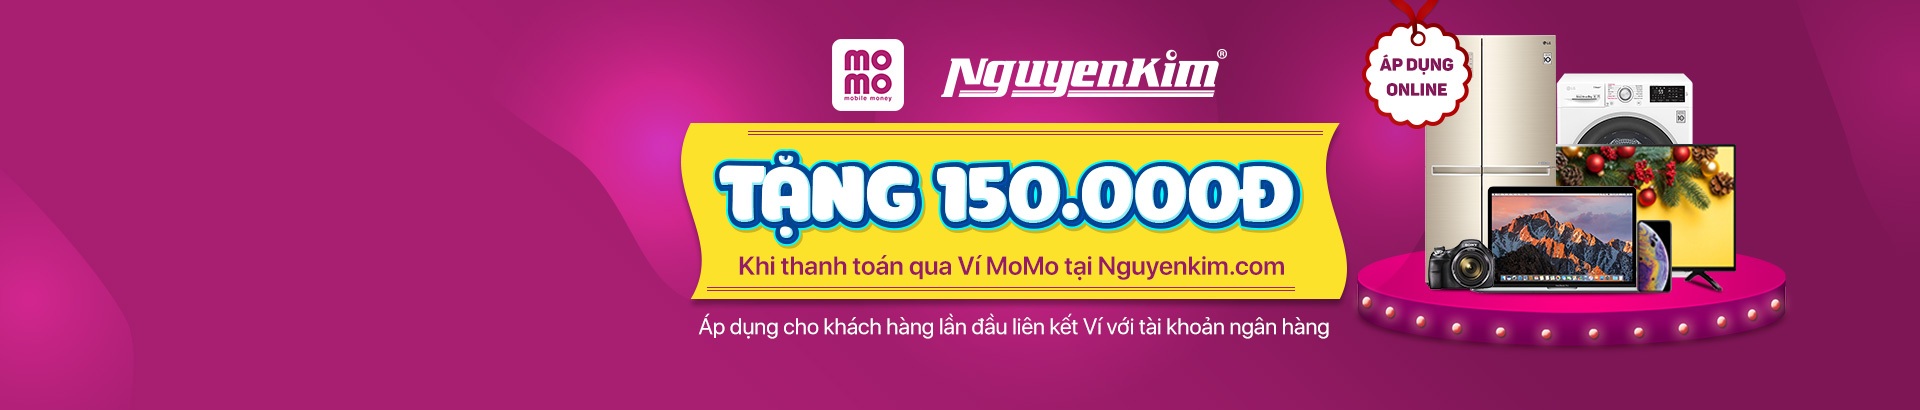 Tặng ngay 150K khi thanh toán qua Ví Momo giảm giá tại nguyenkimvn